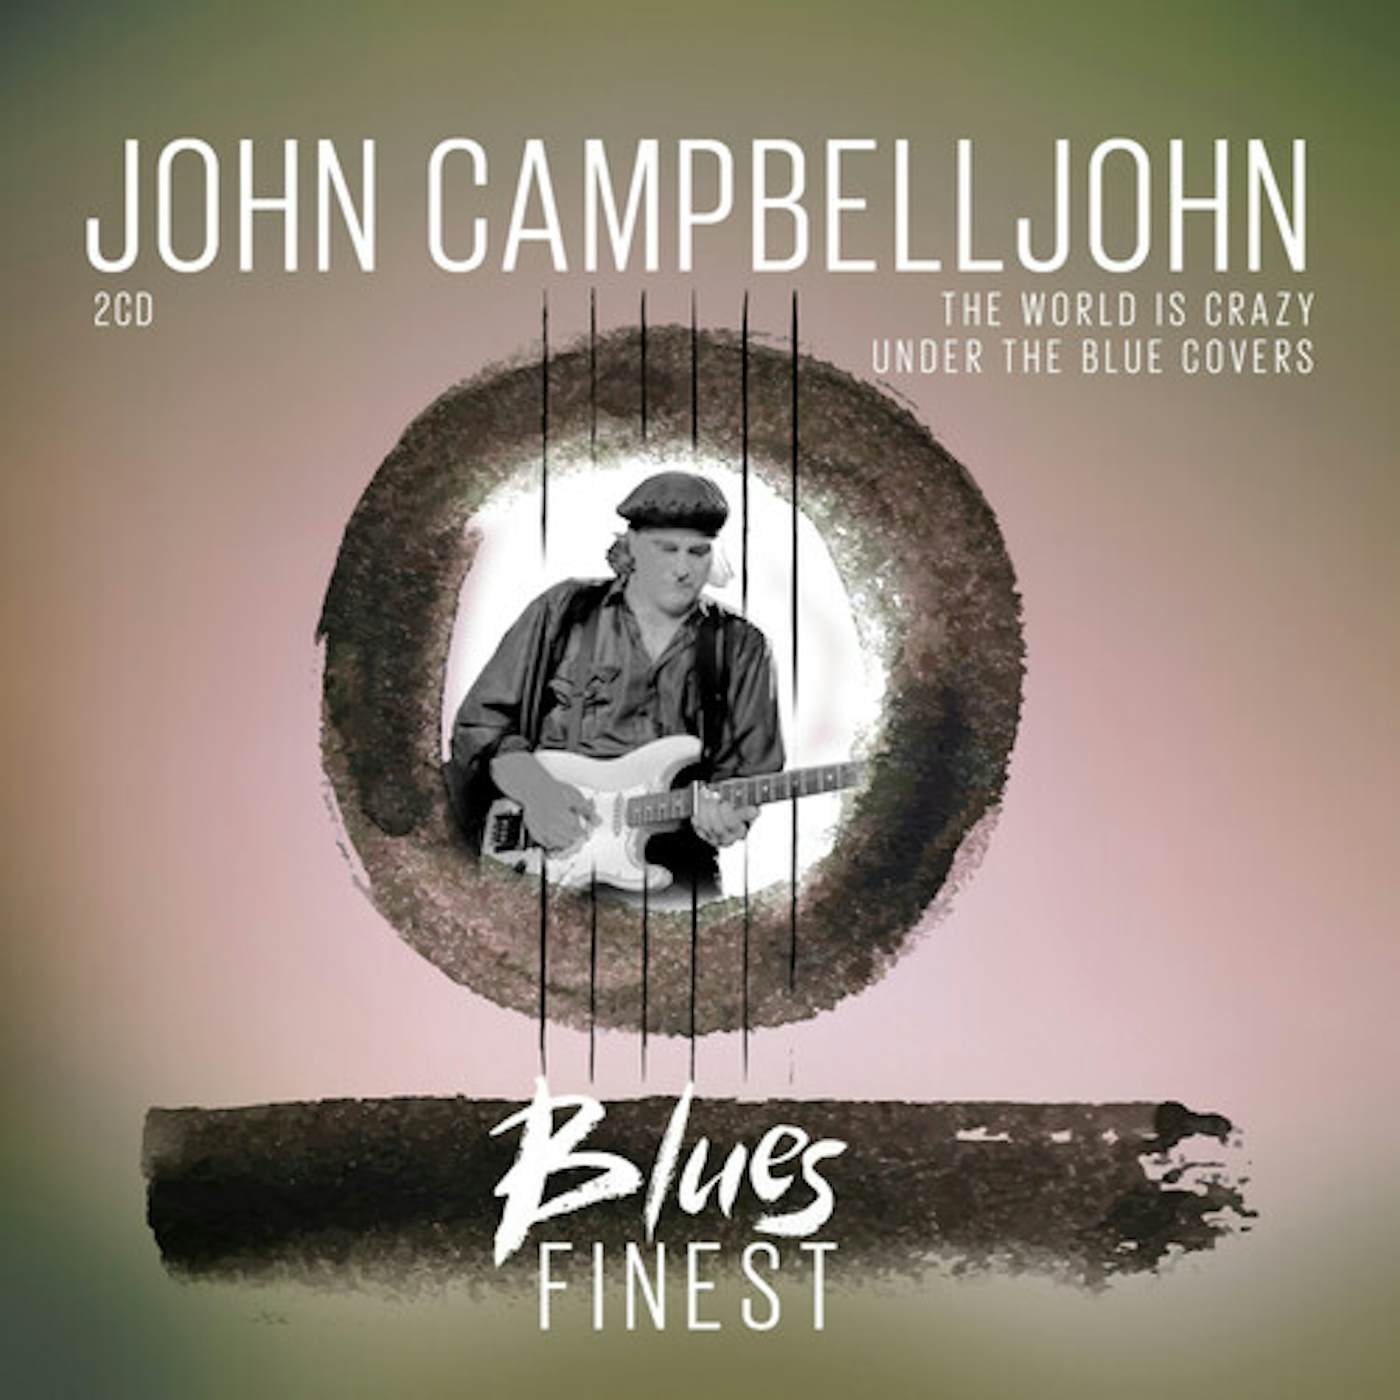 John Campbelljohn BLUES FINEST CD